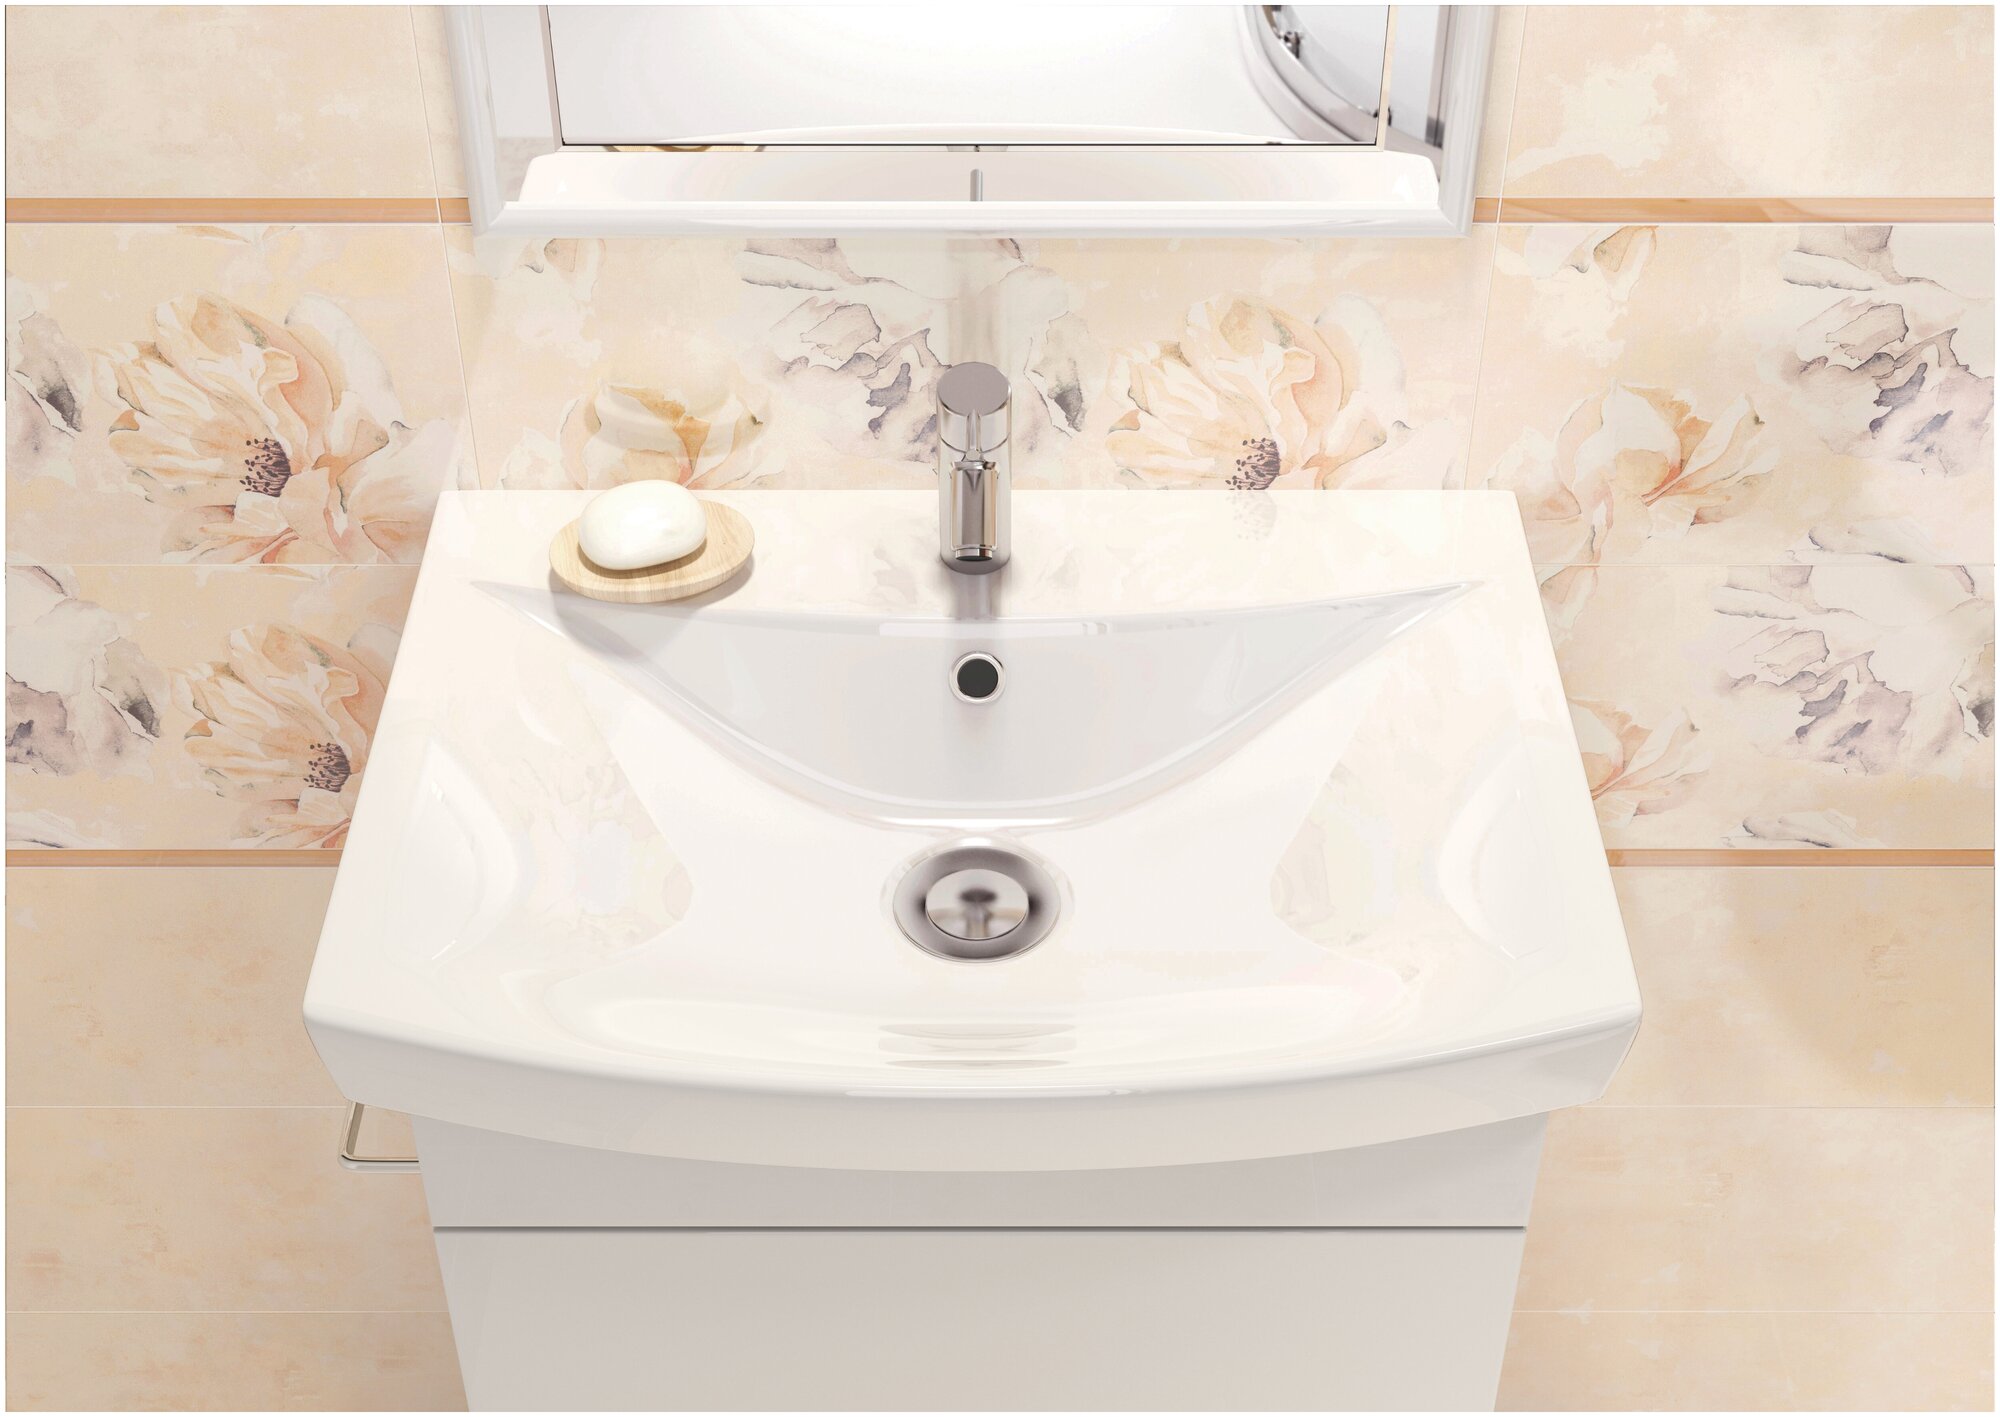 Раковина для ванной Cersanit CARINA 55 1 отв, белый (S-UM-CAR55/1-w)